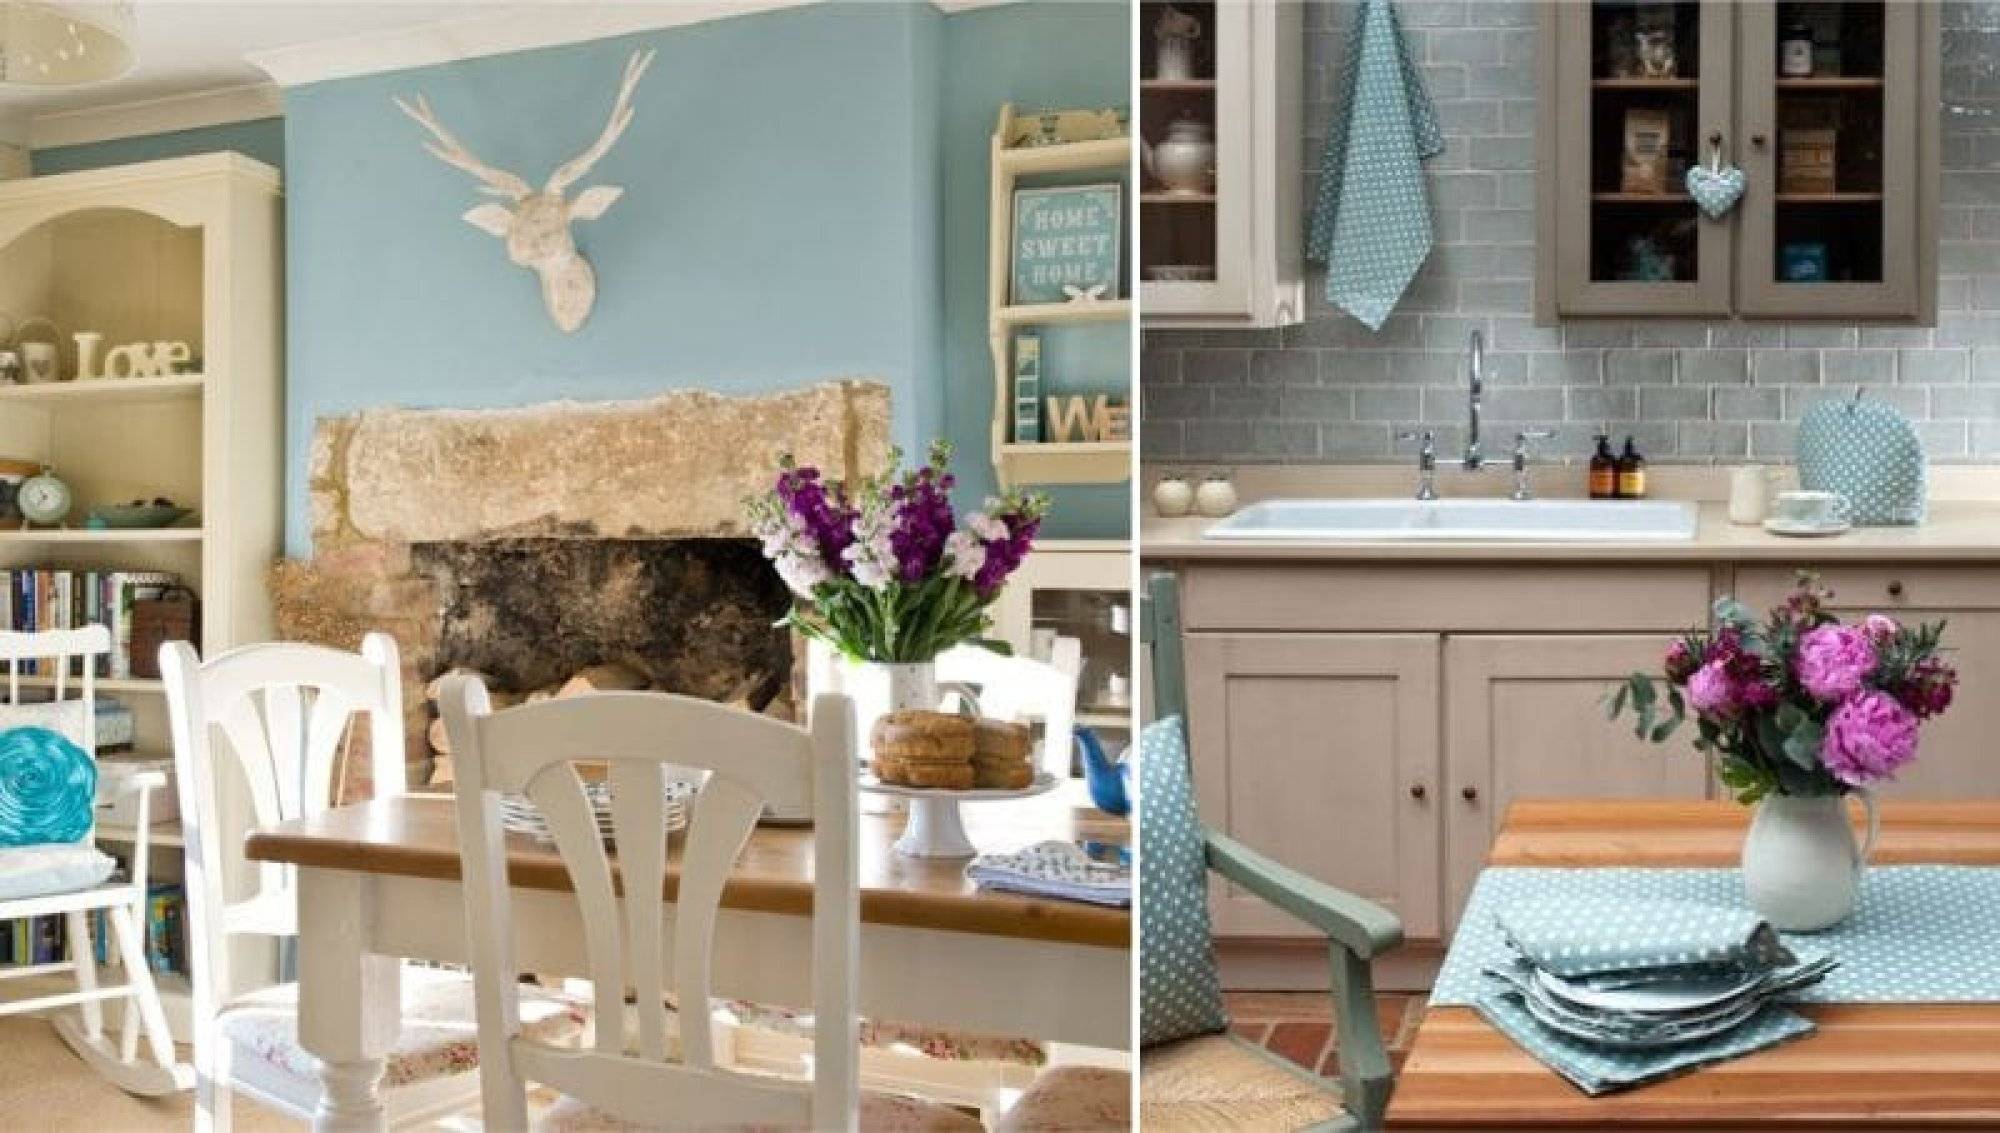 Кухня в голубом цвете - 70 фото лучших новинок уютного дизайна